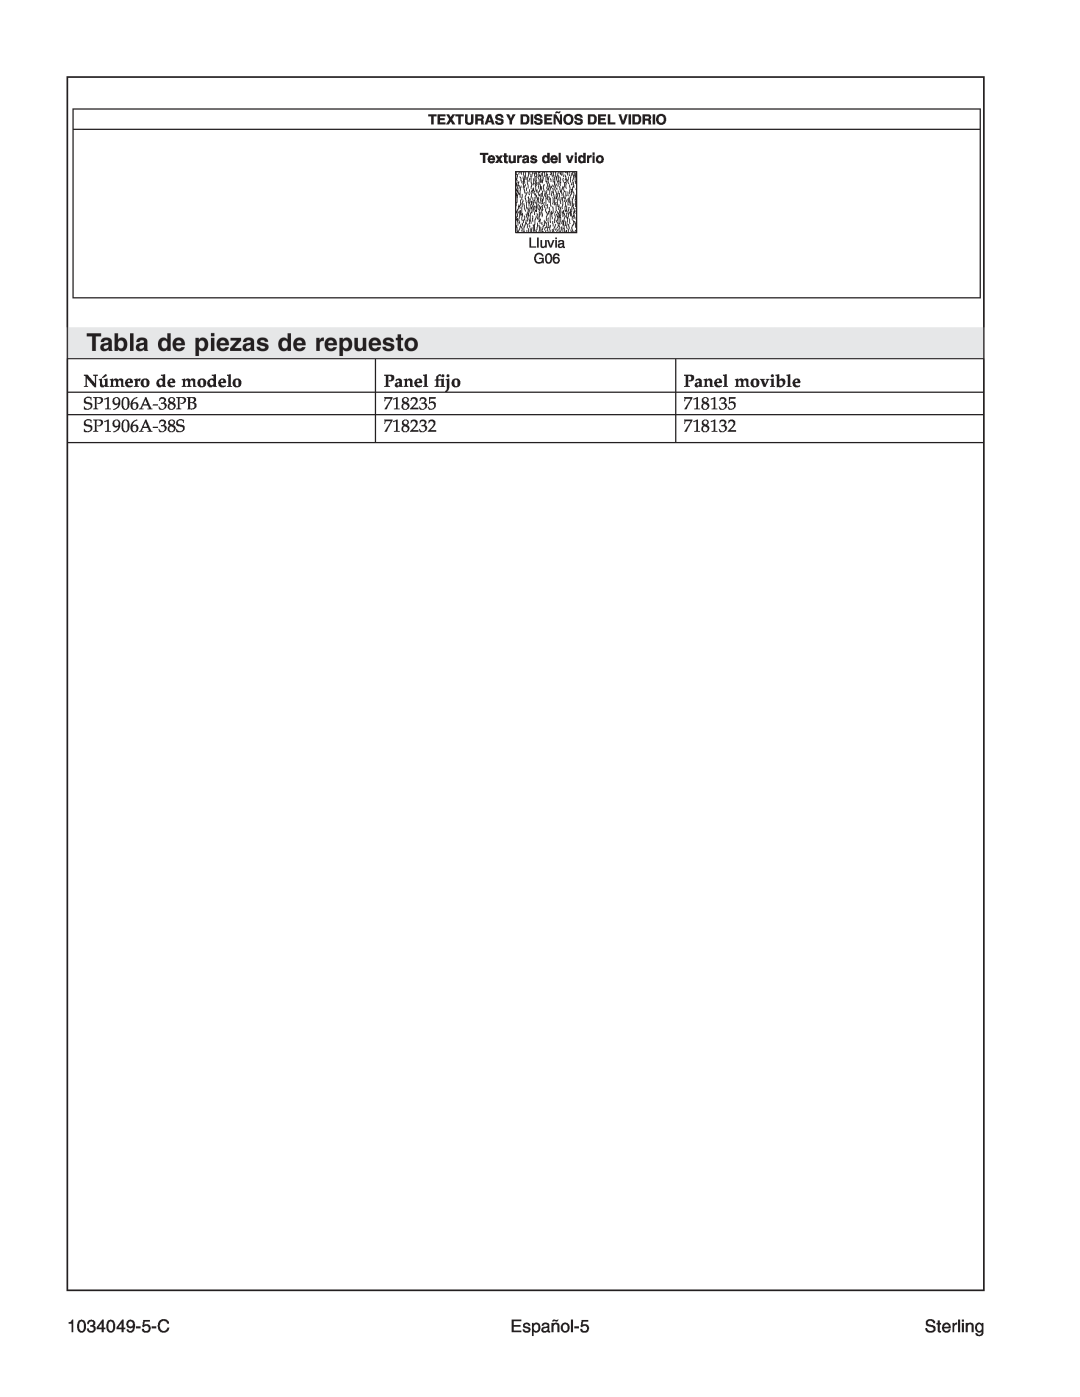 Sterilite SP1900A manual Tabla de piezas de repuesto, Español-5, 1034049-5-C, Sterling, Lluvia 